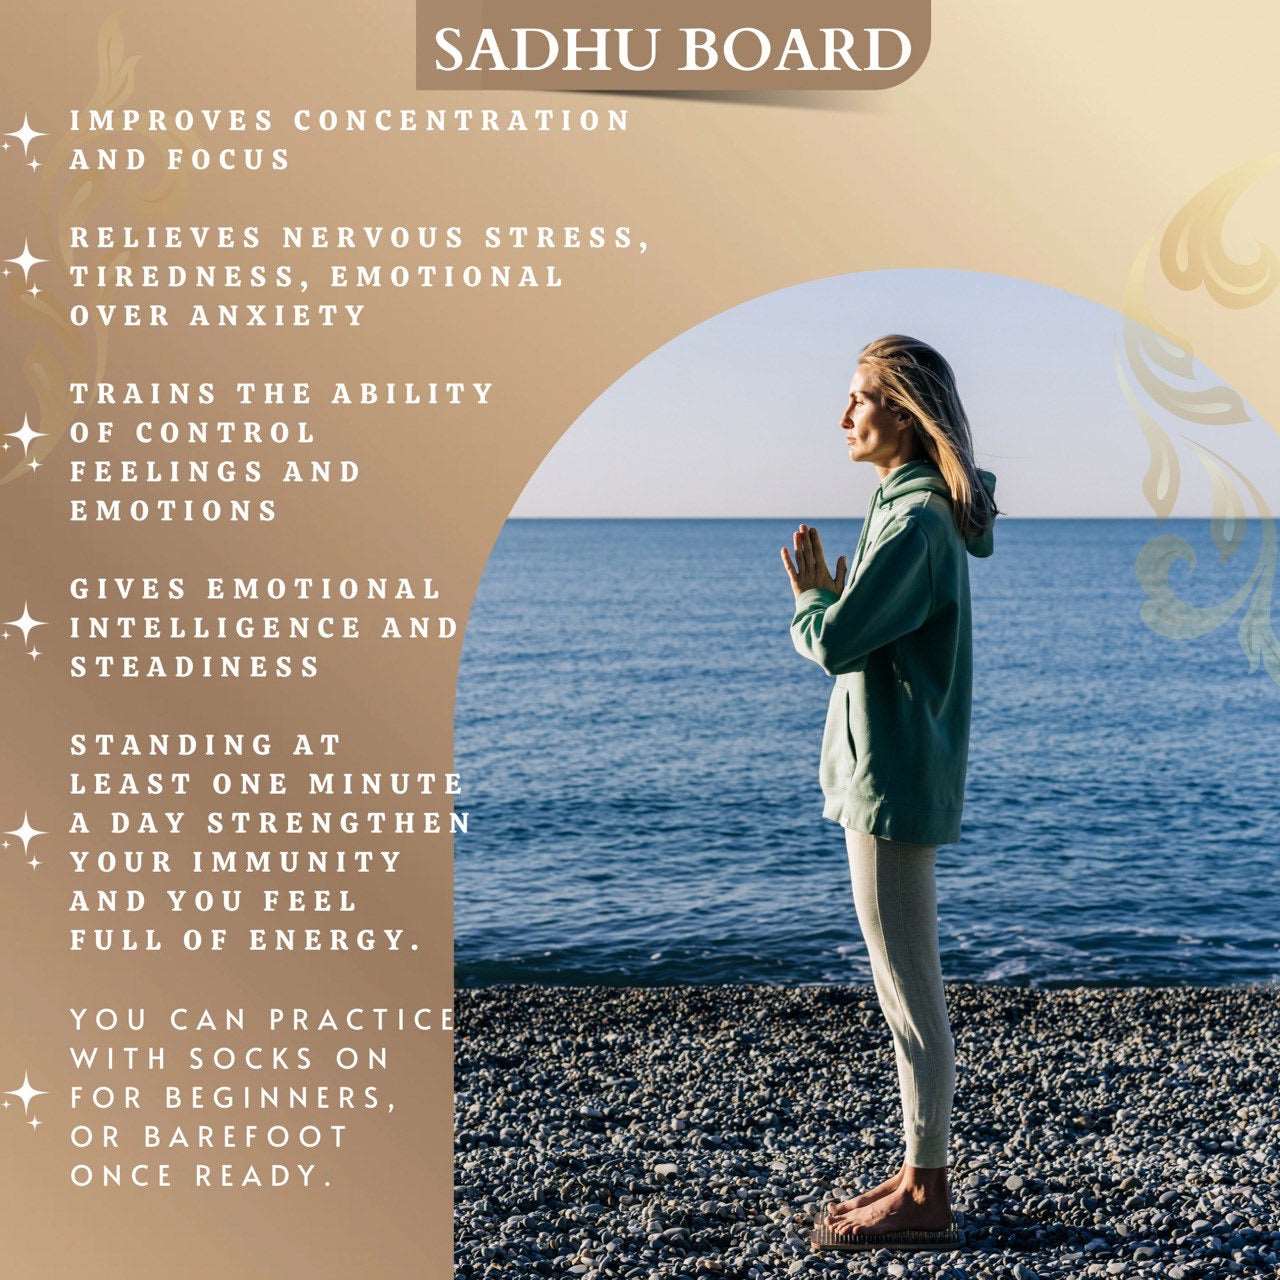 Light Sadhu board - Little Prince, Yoga board, Nails board 10 mm